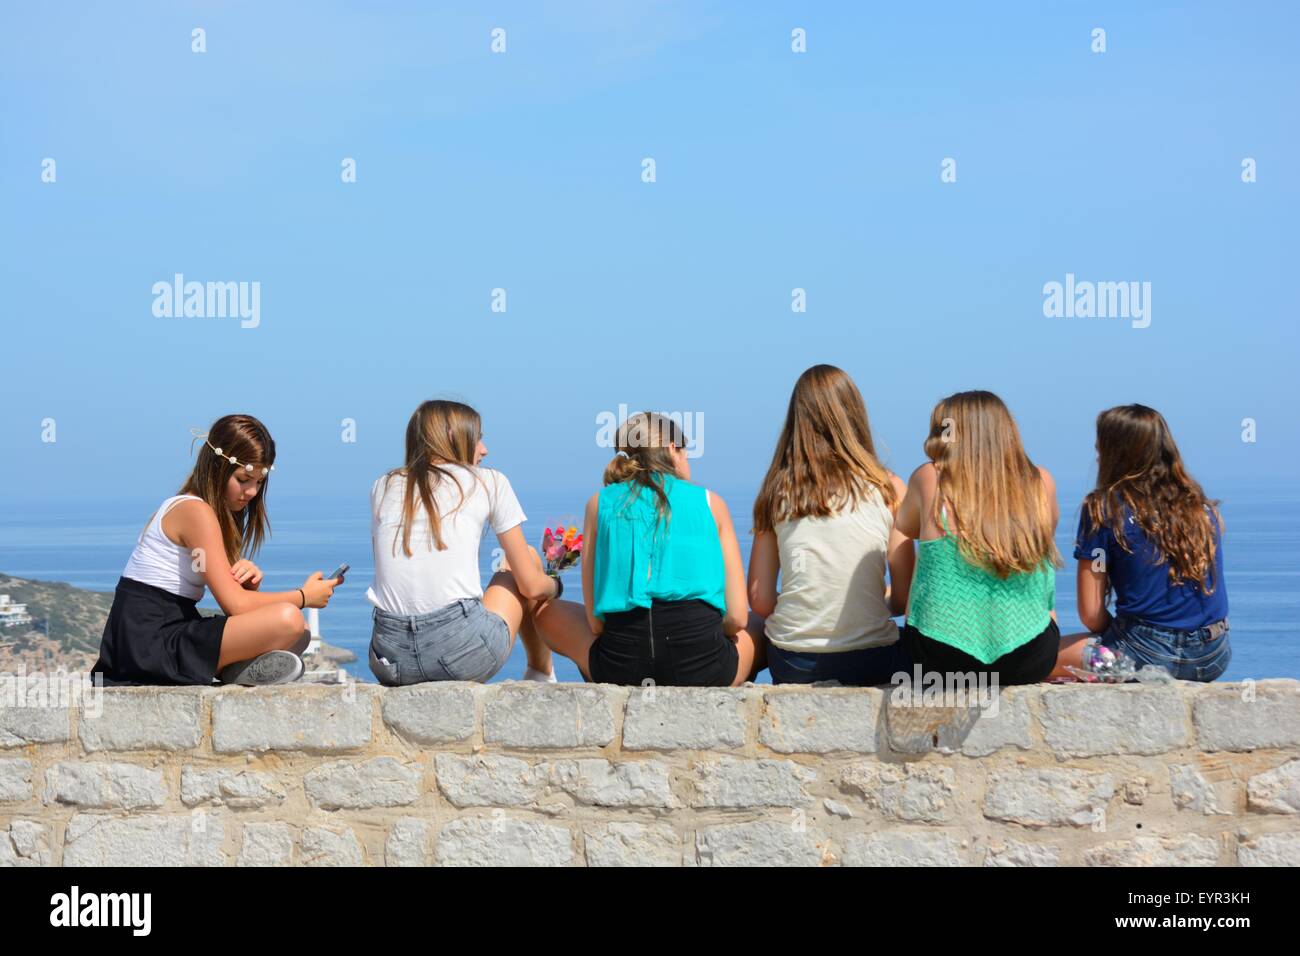 Grupo de chicas adolescentes charlando, sentándose juntas en una pared y mirando al mar Foto de stock